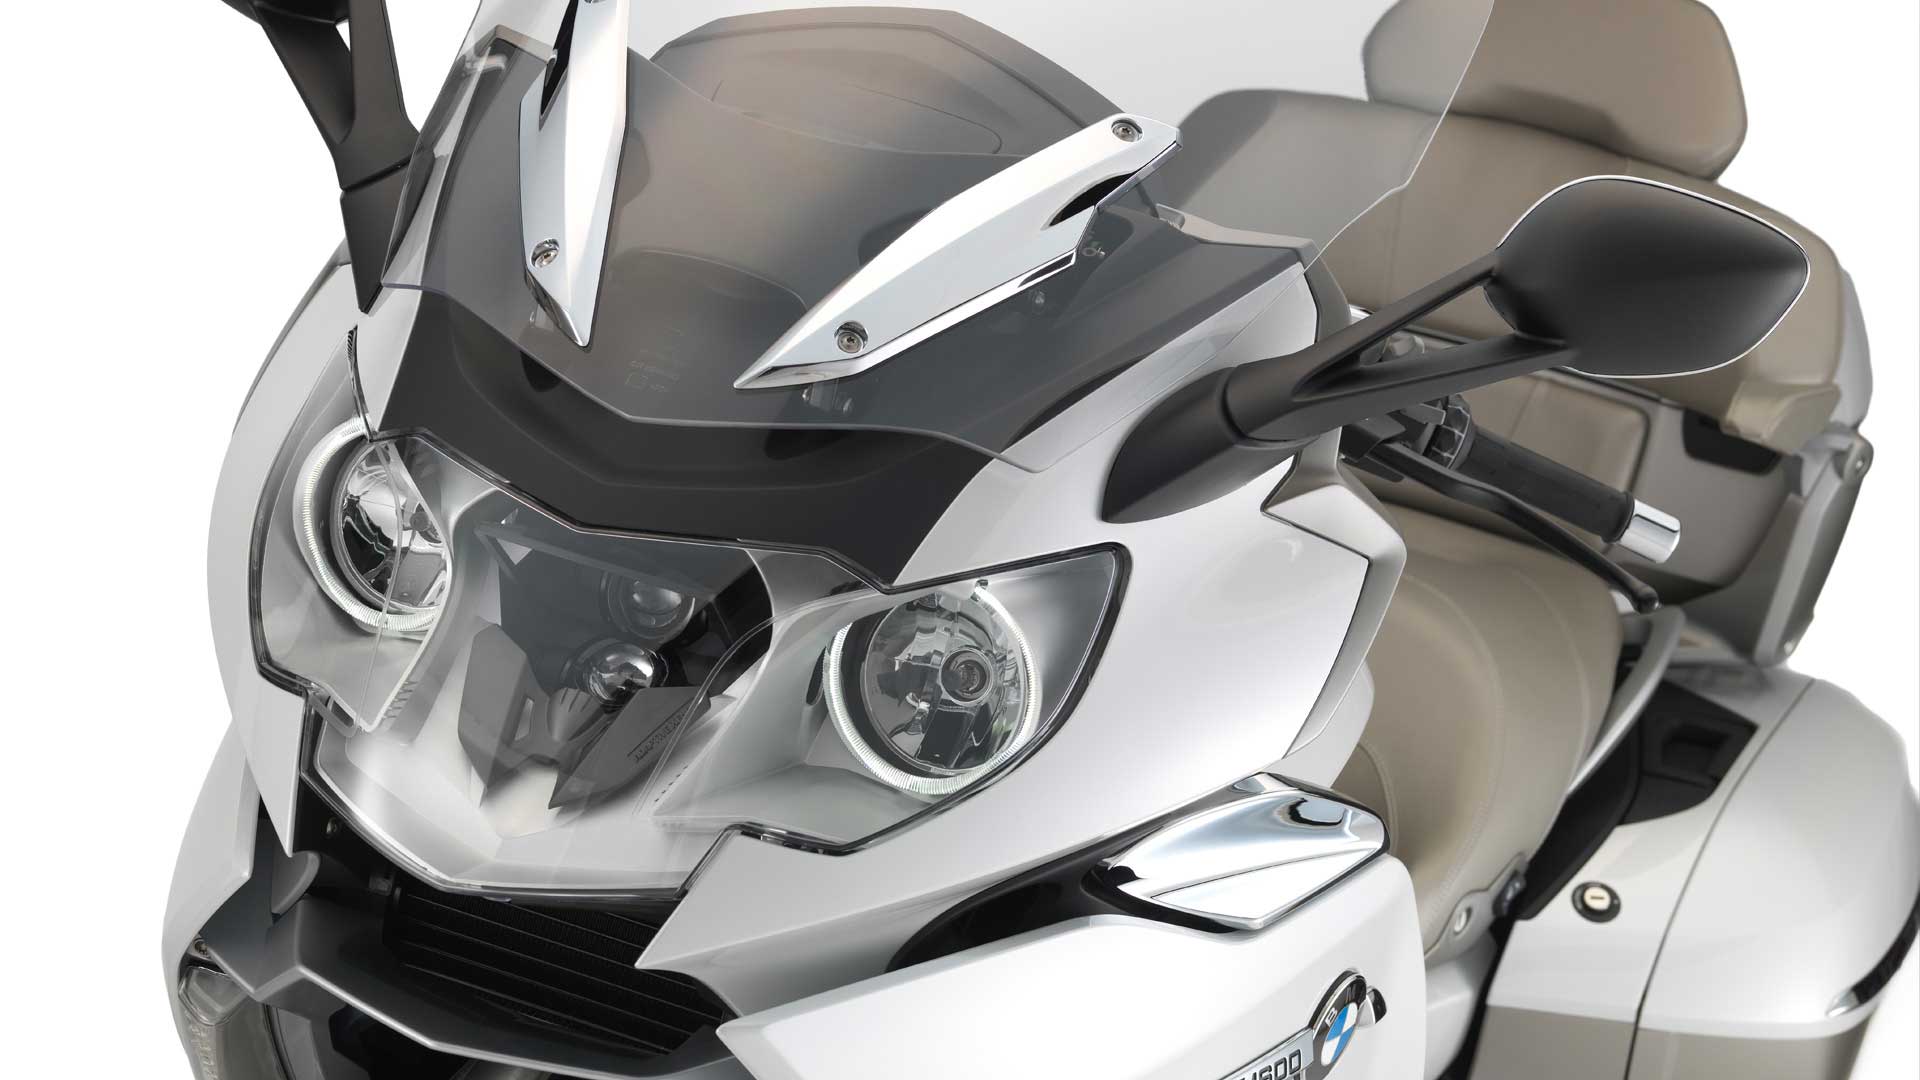 2014 BMW K 1600 GTL Exclusive front headlight